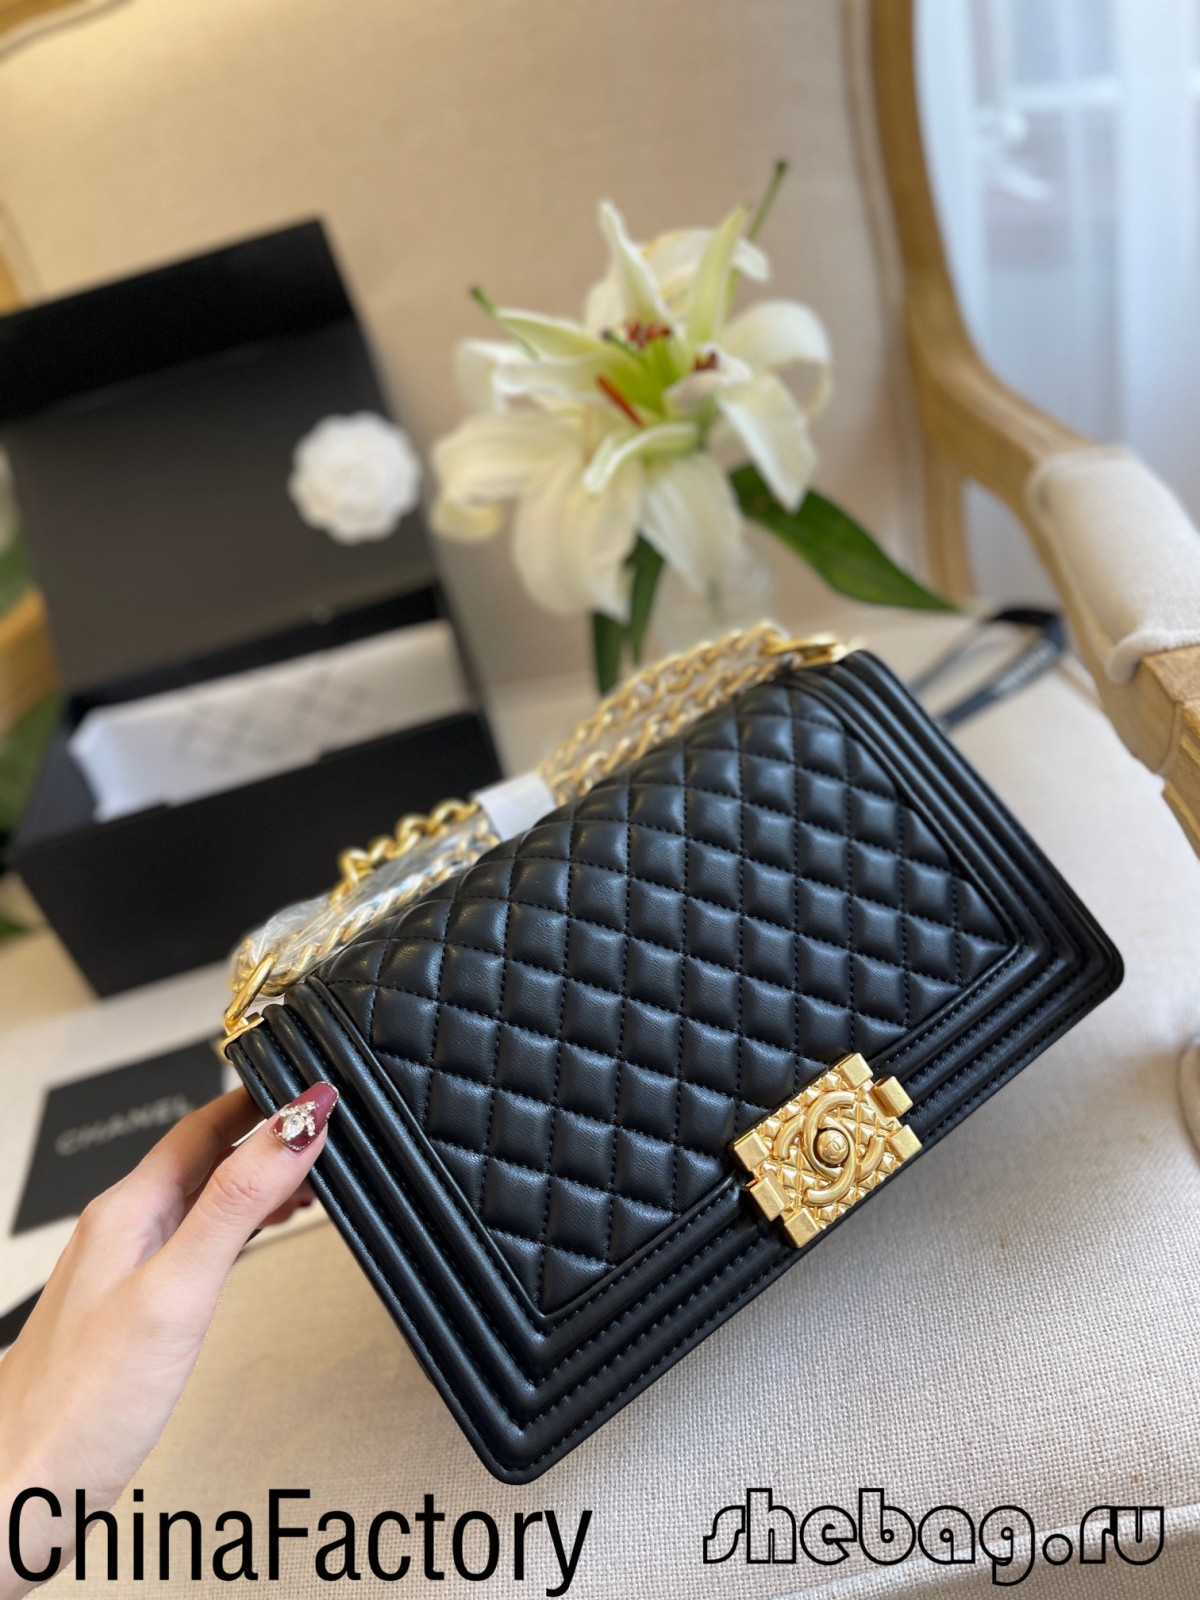 Najkvalitnejšie zdroje repliky kabeliek Chanel 2.55 v Číne (aktualizované v roku 2022) – Internetový obchod s falošnou taškou Louis Vuitton najvyššej kvality, Replica designer bag ru